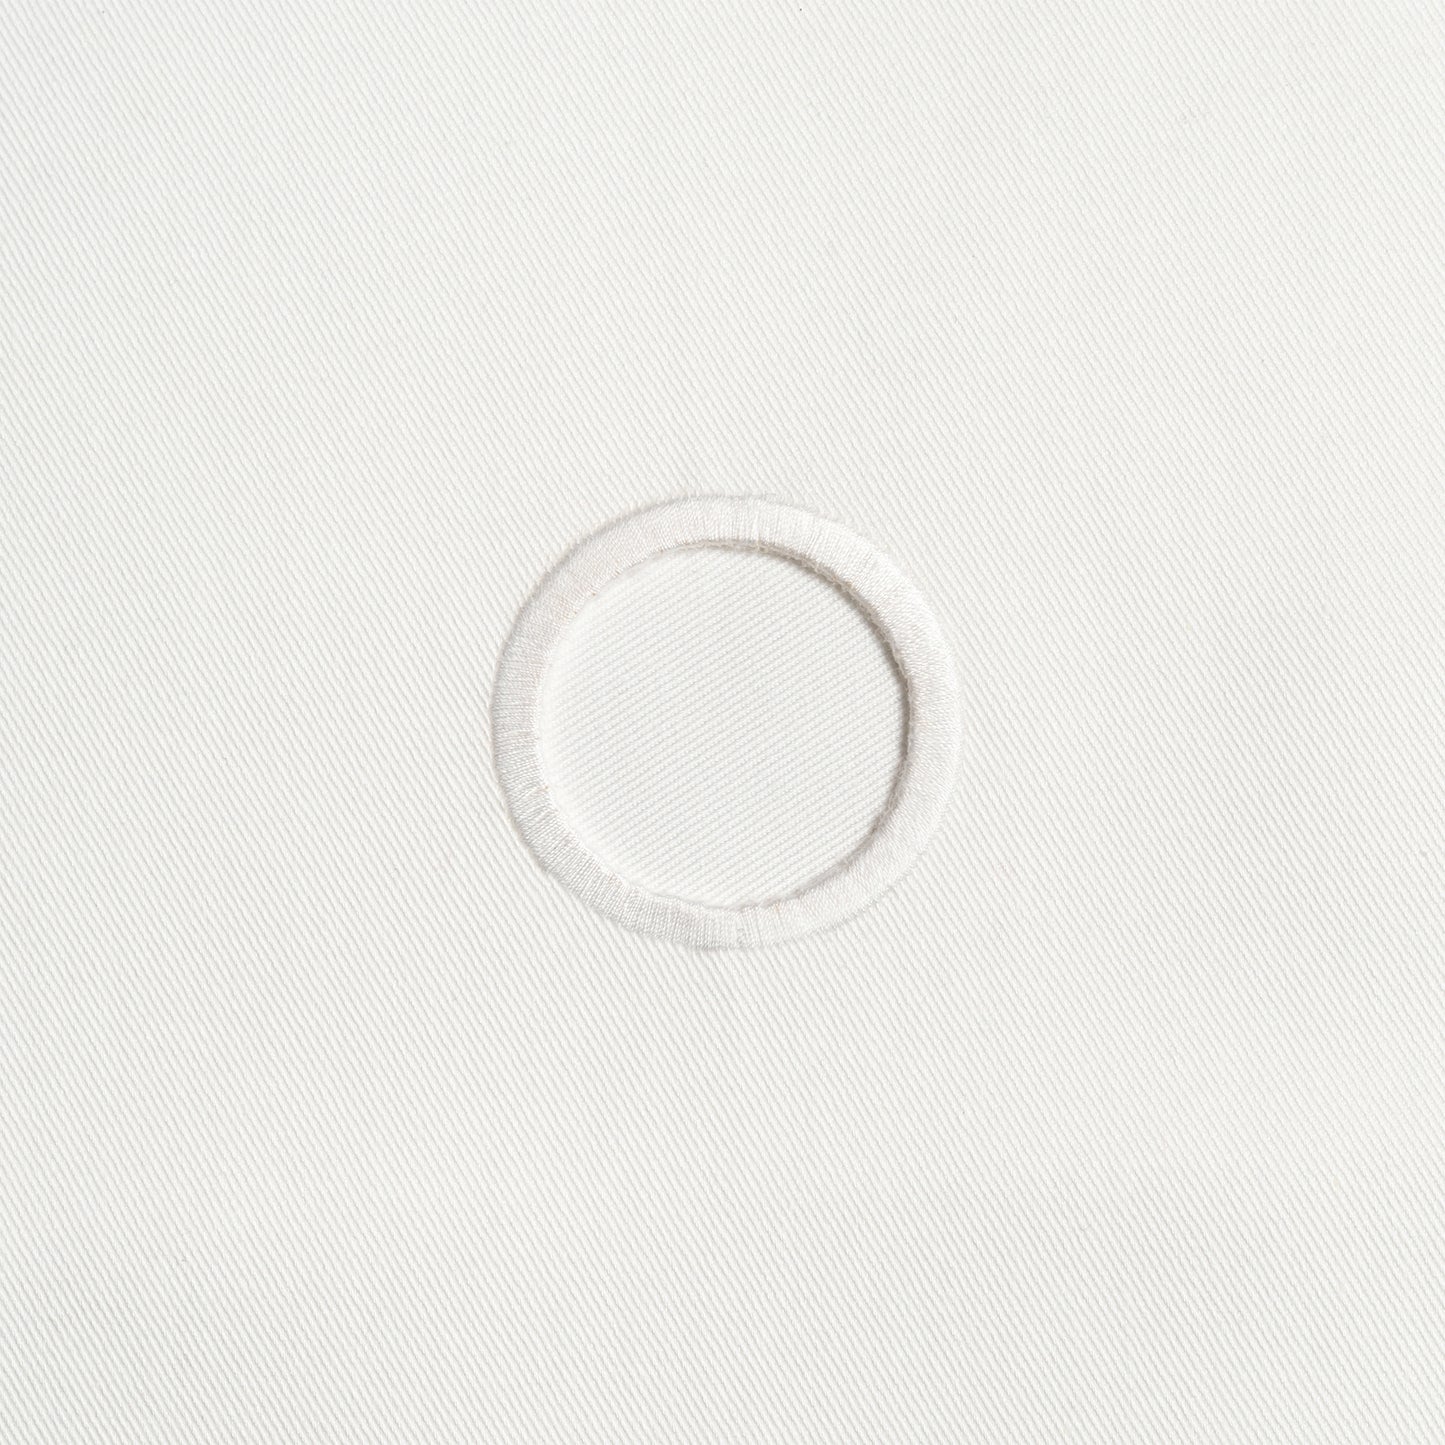 Original BottleCloth · Blanco, Algodón, 42 cm, Orificio en las esquinas, Círculo cosido · Paquete de 8